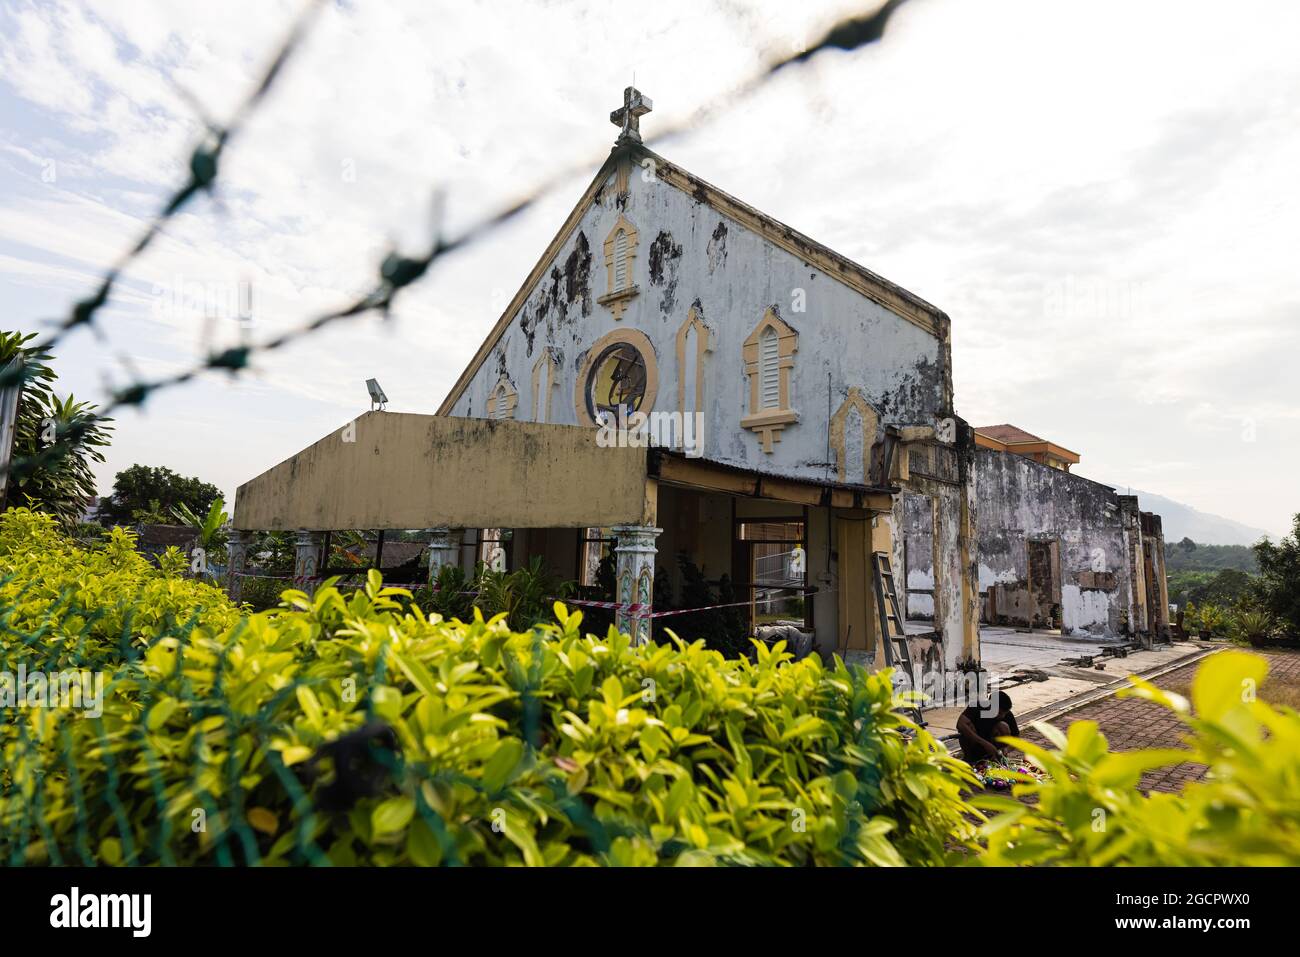 Kuala Lumpur, Malesia - 24 dicembre 2020: La rovina di una chiesa dietro filo spinato. L'edificio dilapido sta per crollare. Il comm cristiano Foto Stock